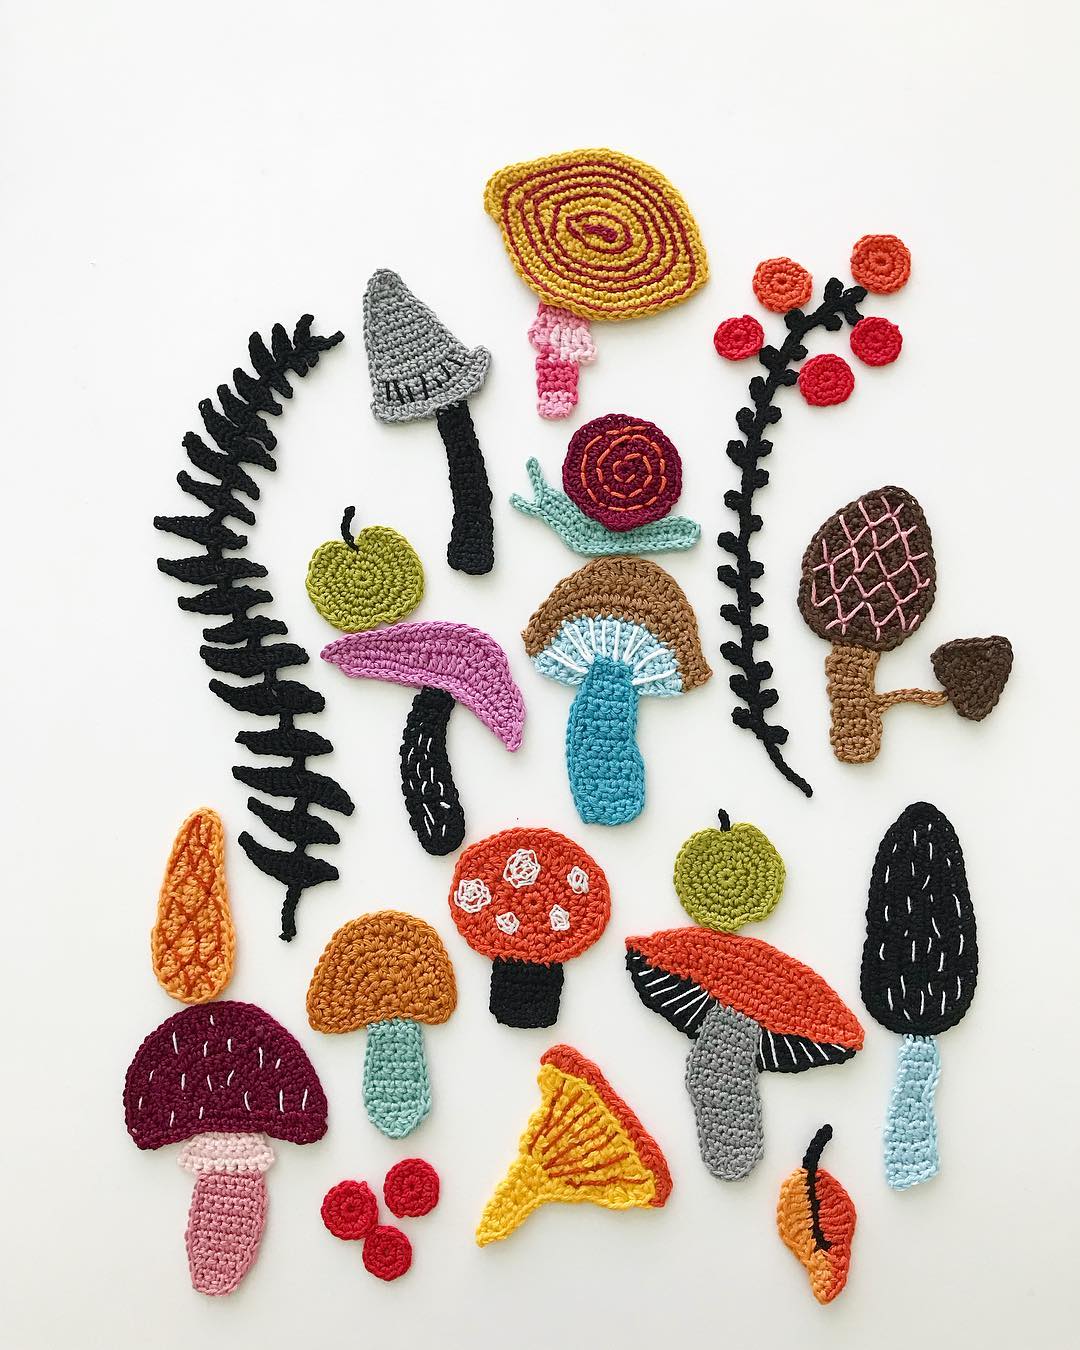 Crochet inspiration by Tuija Heikkinen